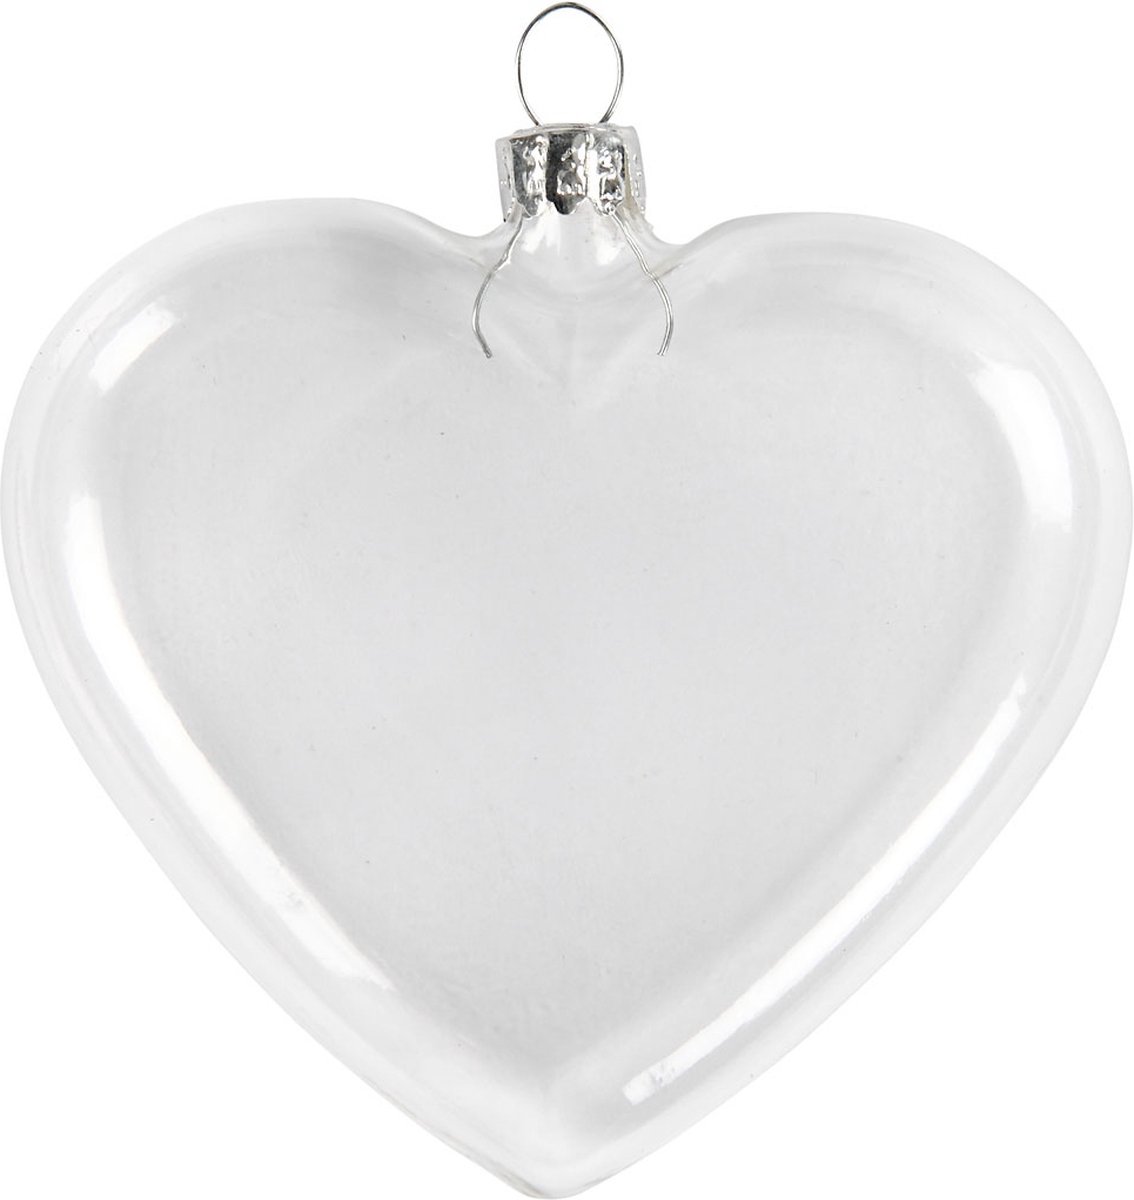 Plat glazen hart, h: 7,8 cm, b: 9 cm, 6 stuks